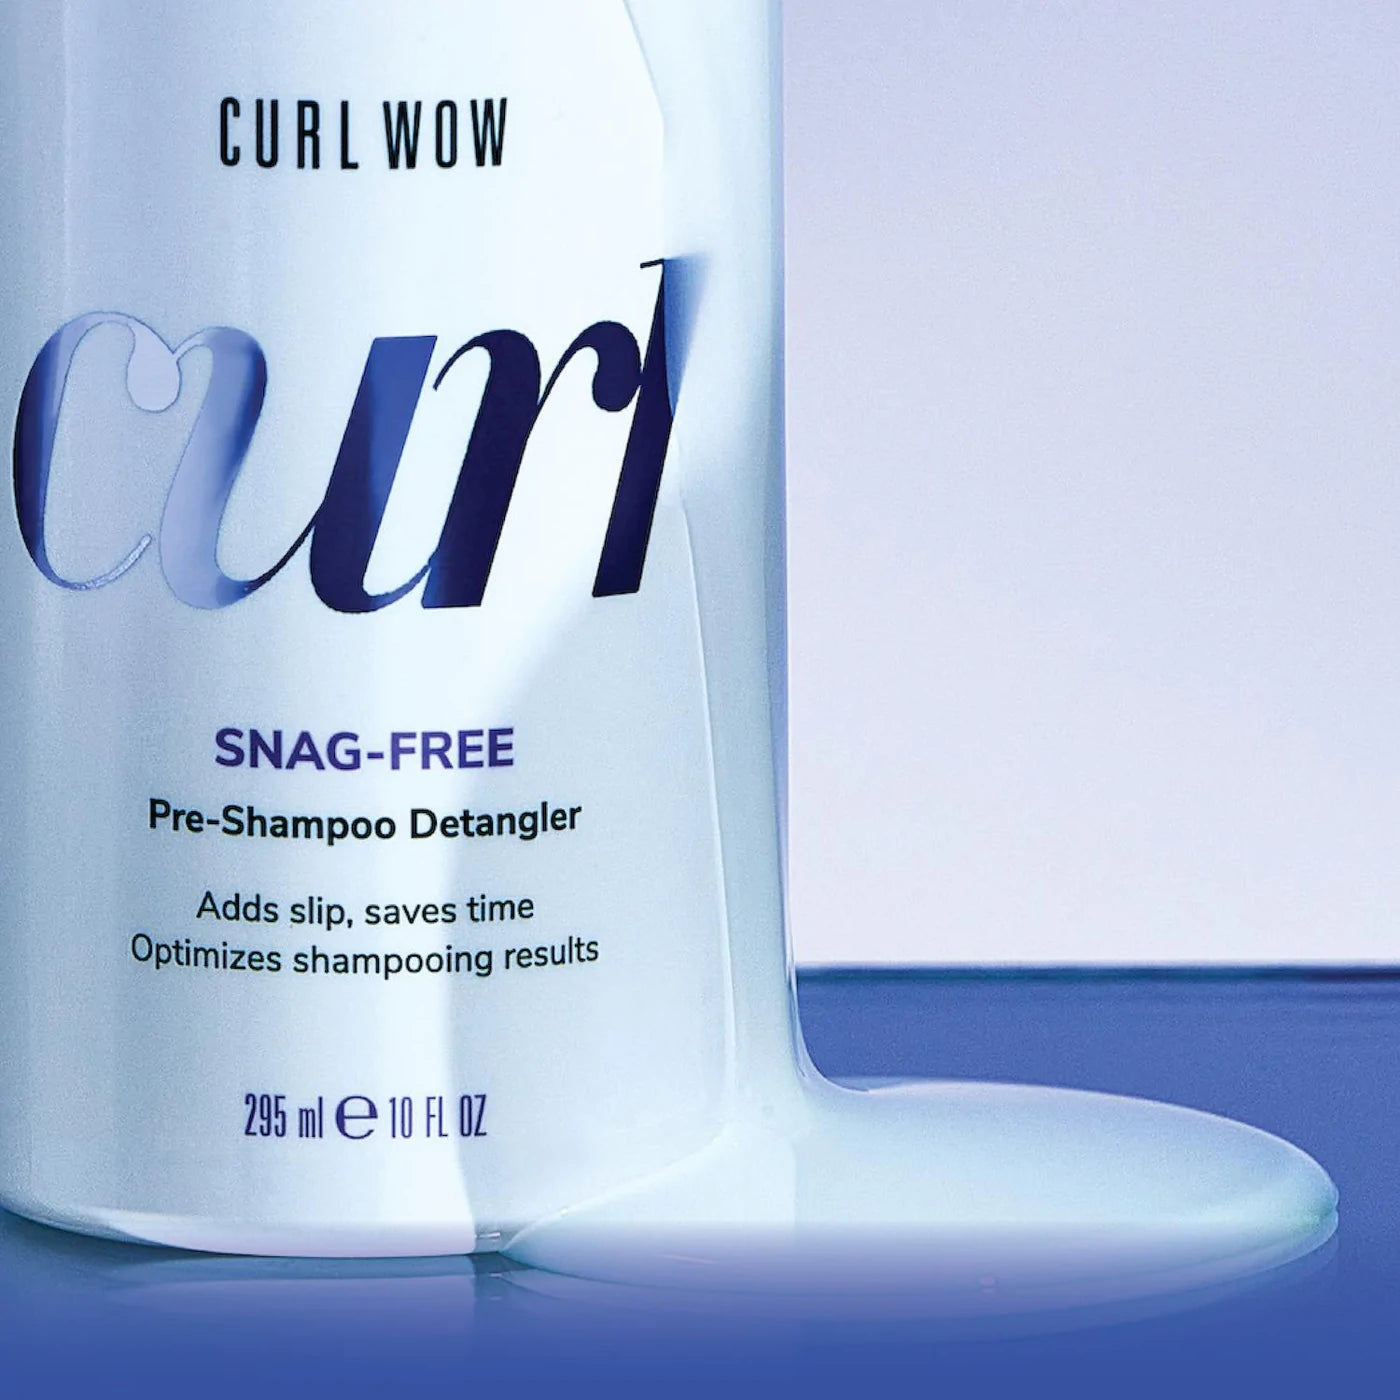 Color Wow Snag-Free Pre-Shampoo Detangler, with swatch